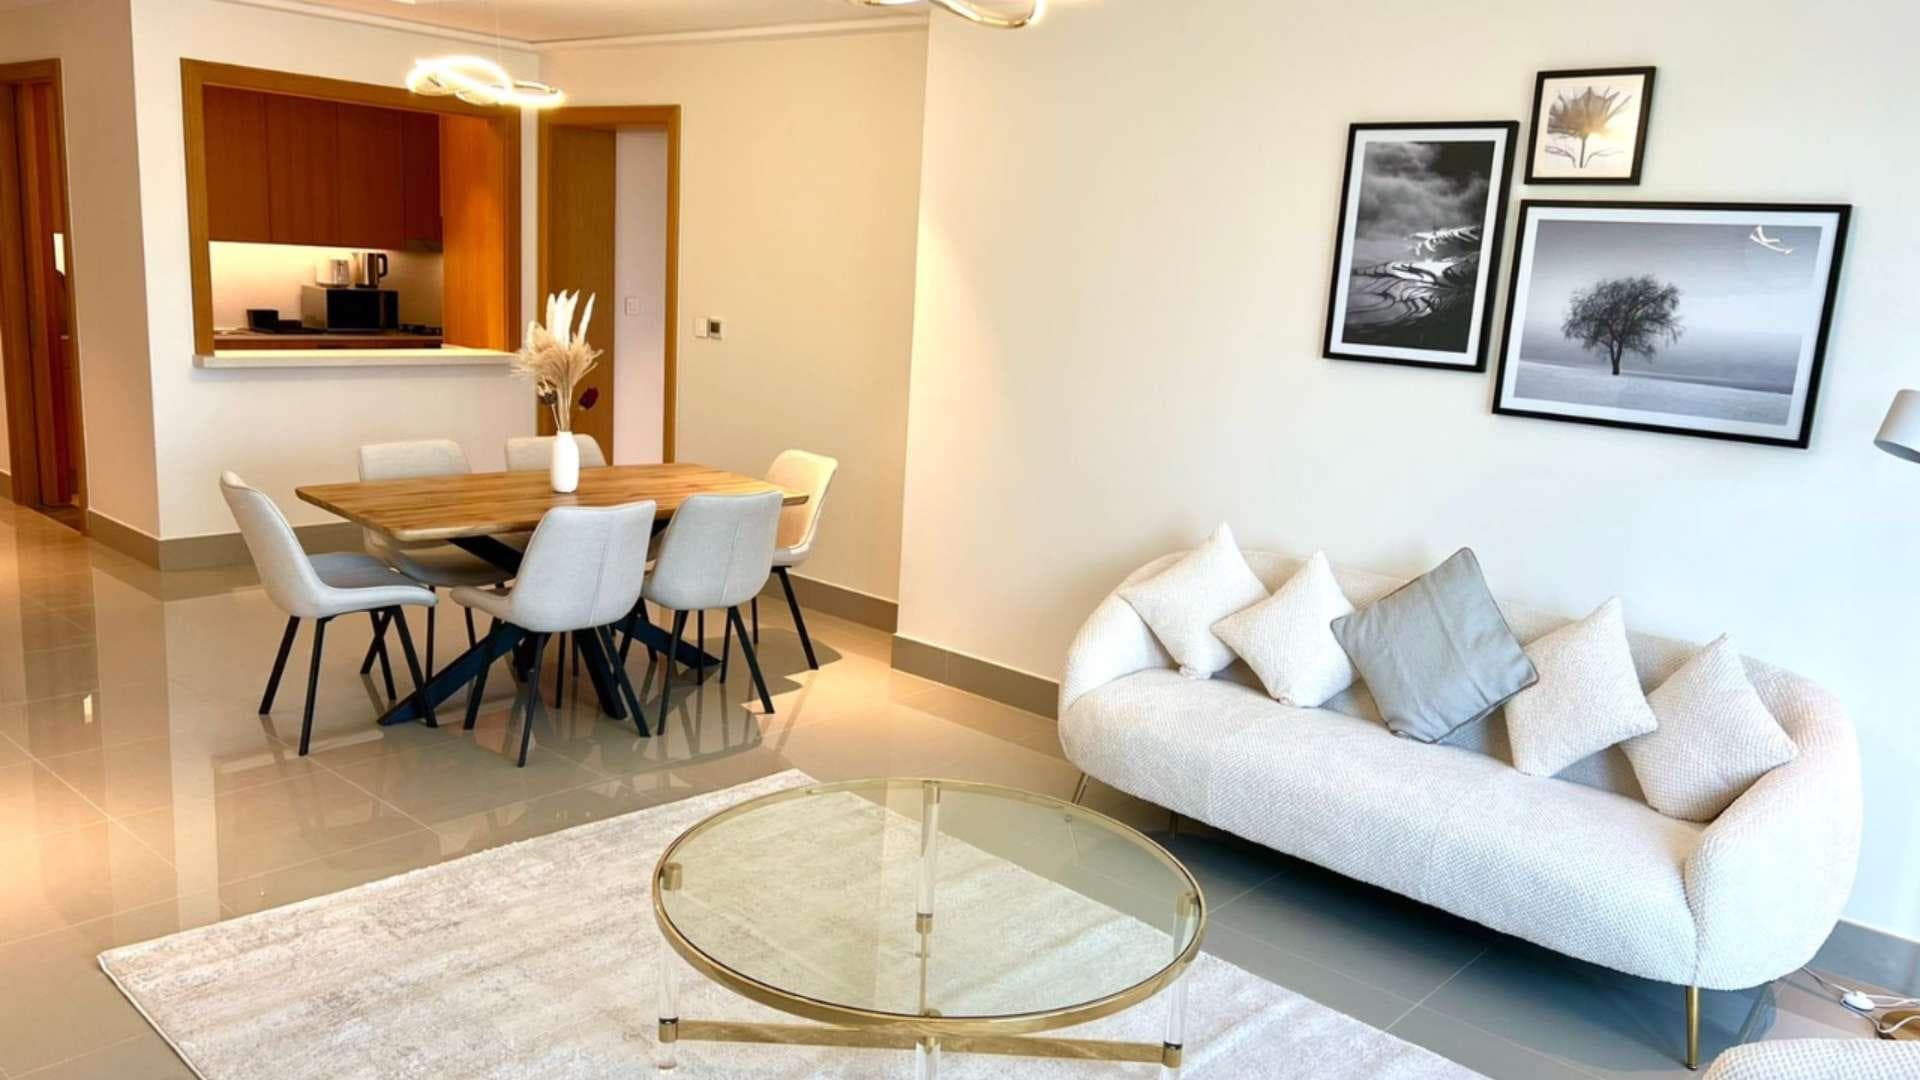 3 Bedroom Apartment For Rent Opera District Lp21079 D6ef4e79a169700.jpg